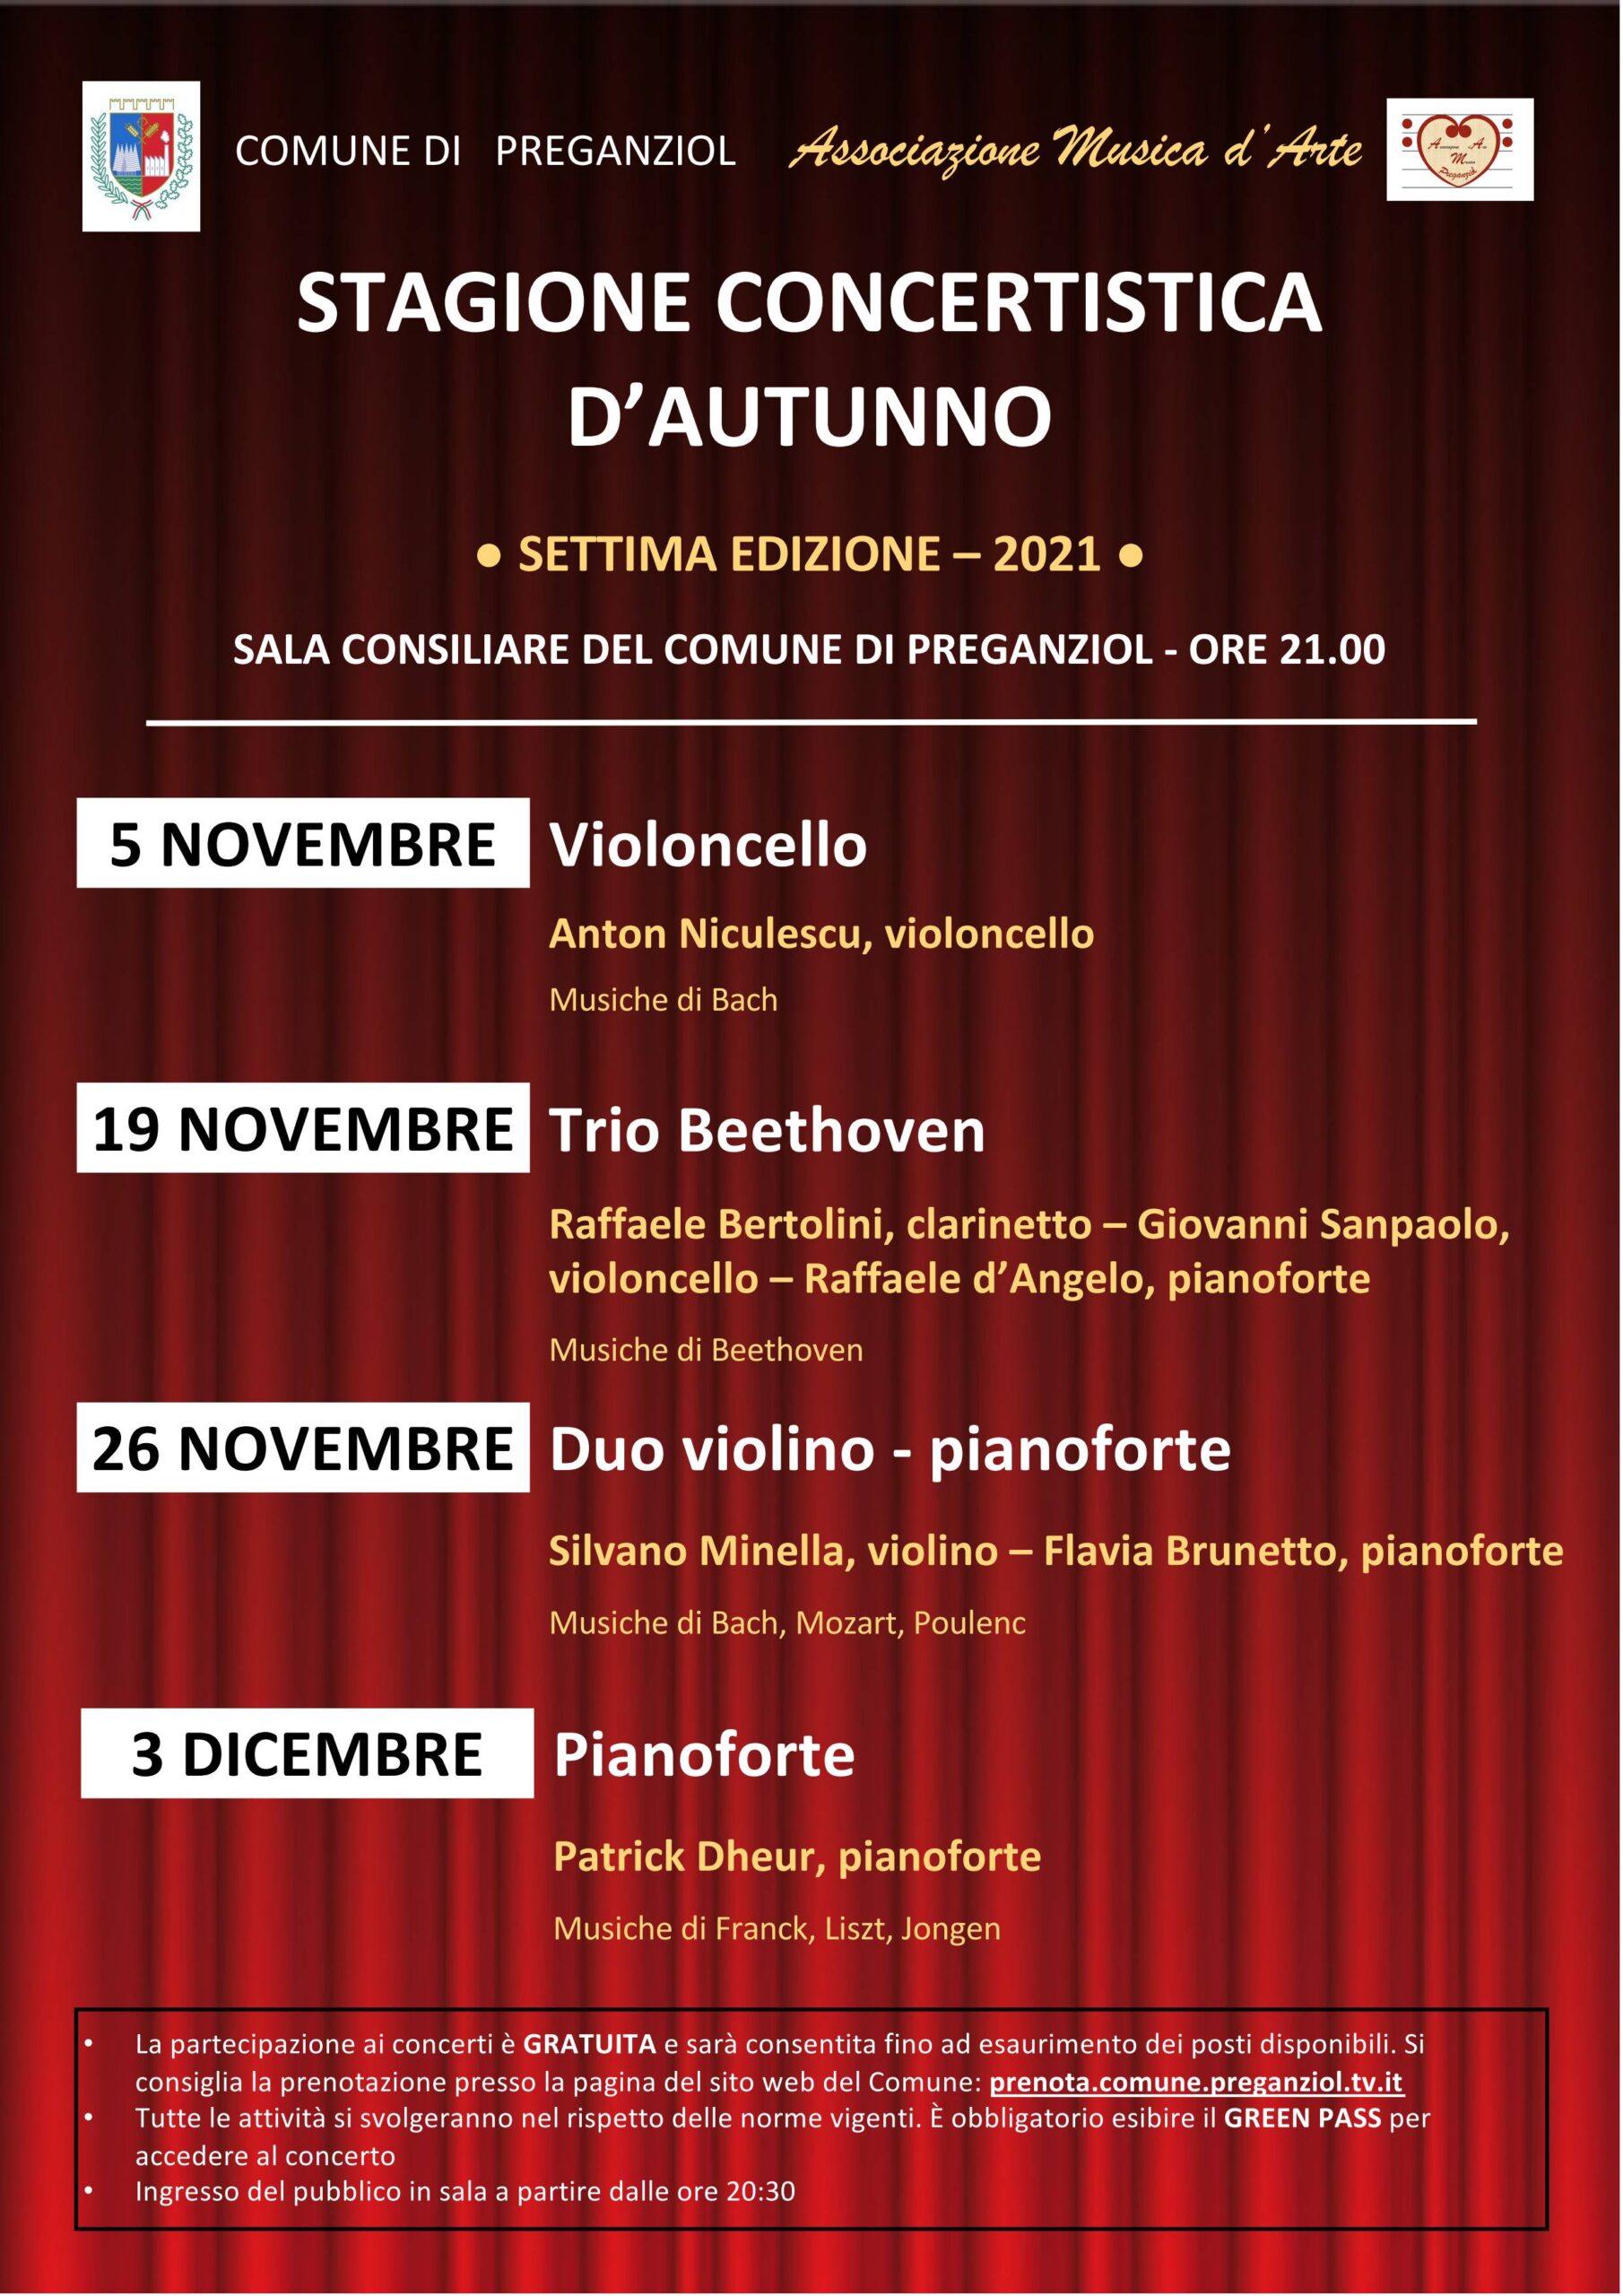 Stagione concertistica d’autunno: Venerdì 26 novembre Duo Violino Pianoforte